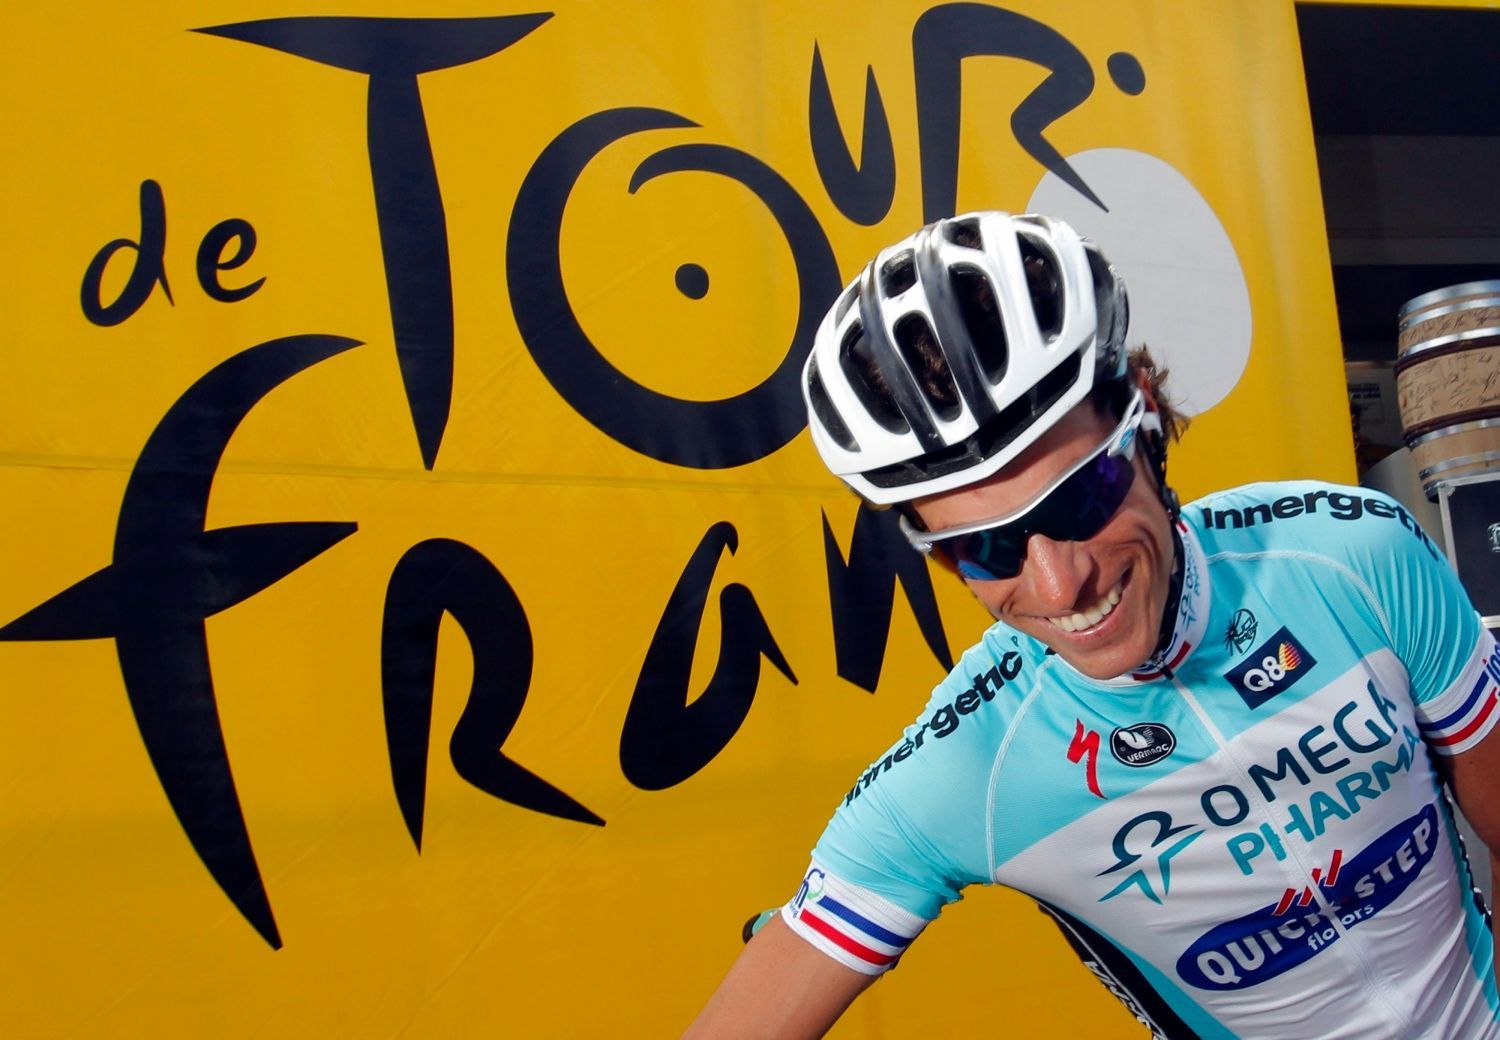 Francouzský cyklista Sylvain Chavanel ze stáje Omega Pharma-Quickstep během šesté etapy Tour de France 2012.